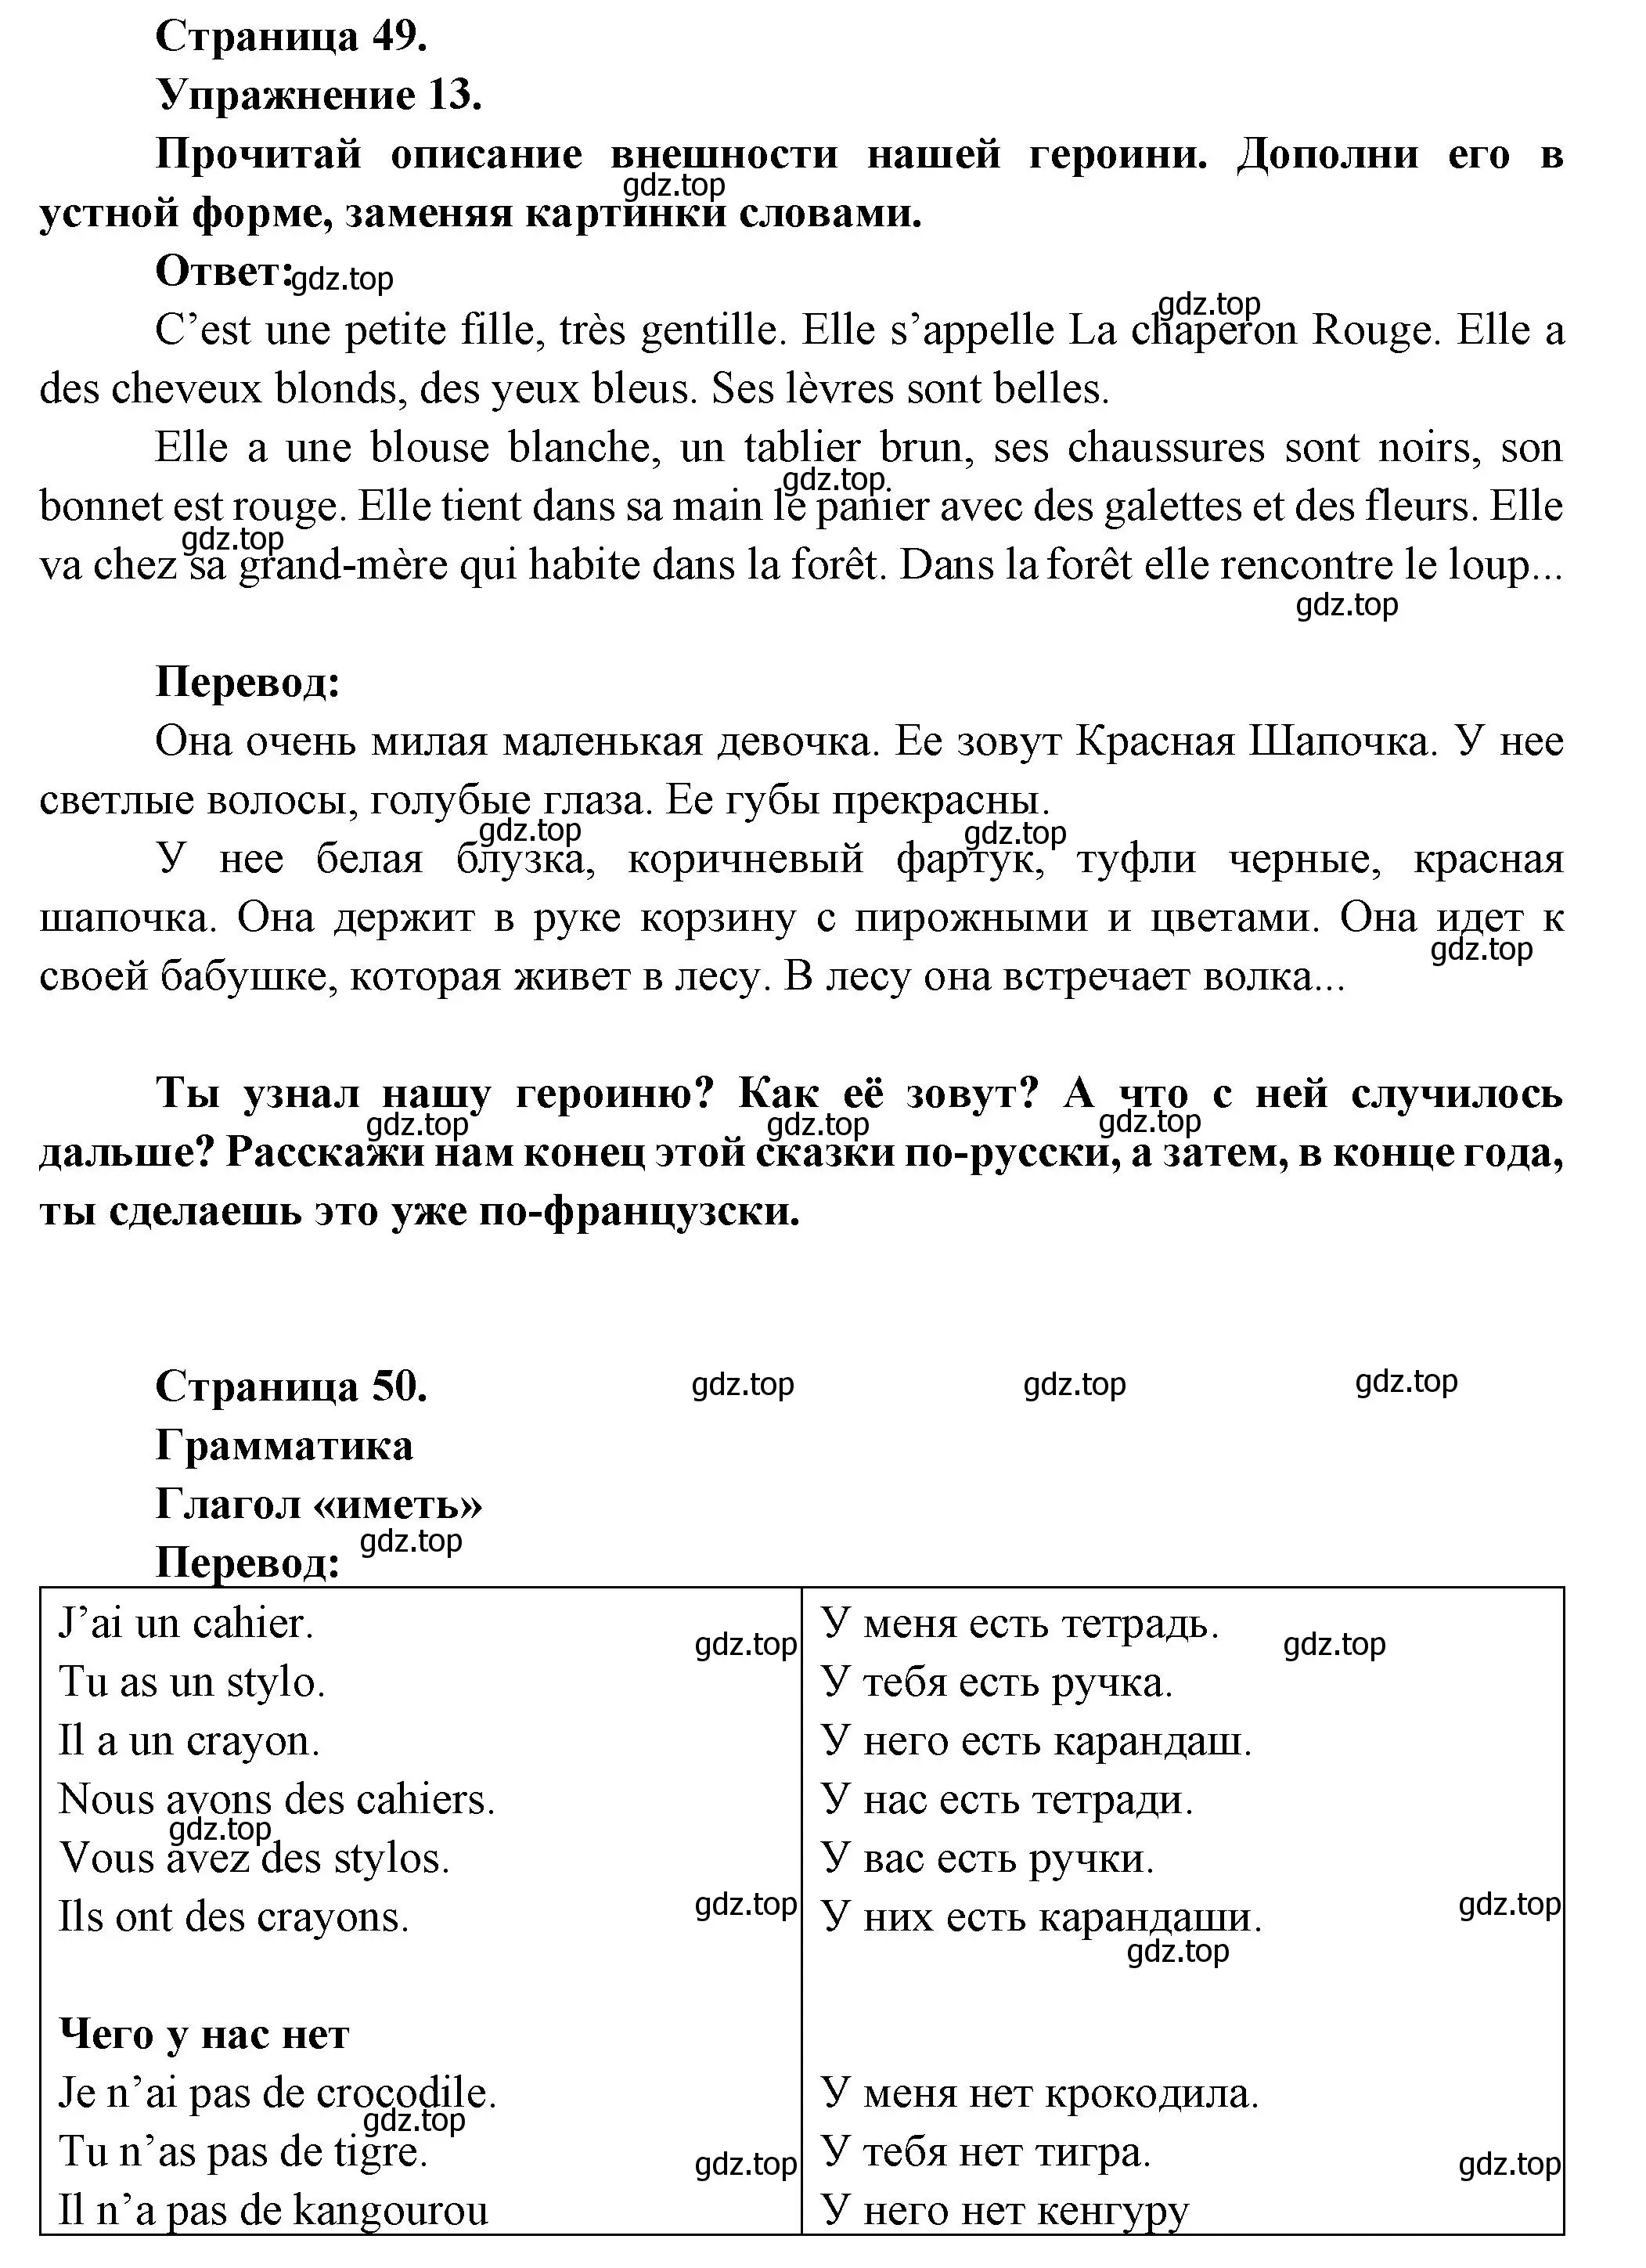 Решение номер 13 (страница 49) гдз по французскому языку 5 класс Береговская, Белосельская, учебник 1 часть